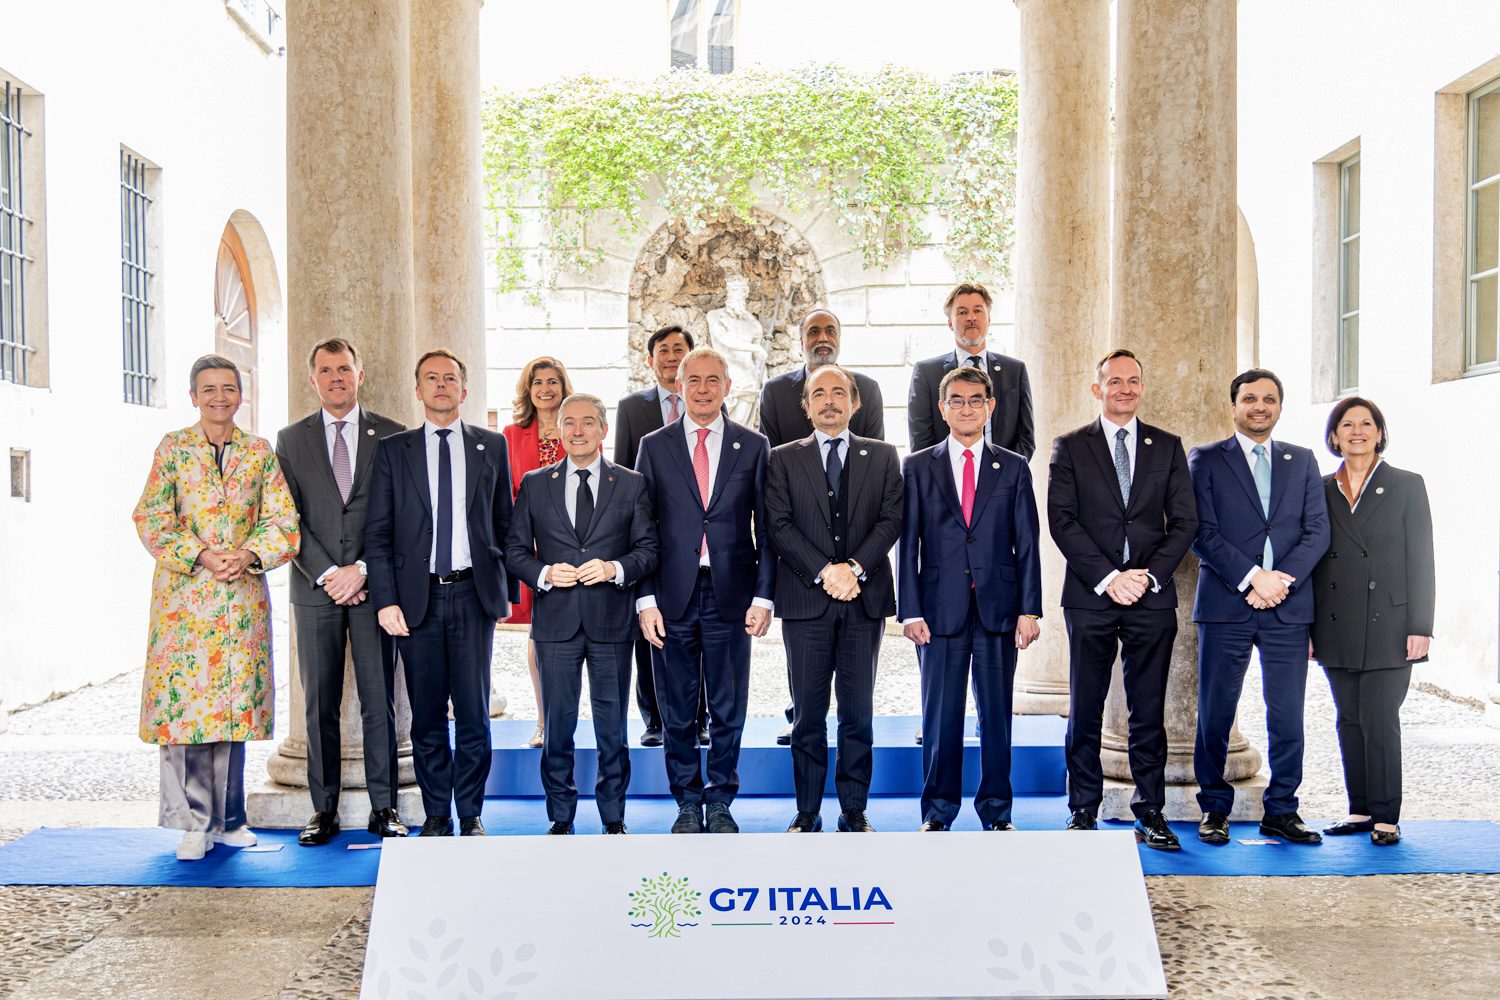 Palazzo Geremia Trento. Foto di rito delle delegazioni dopo la riunione ministeriale sull'intelligenza artificiale del G7